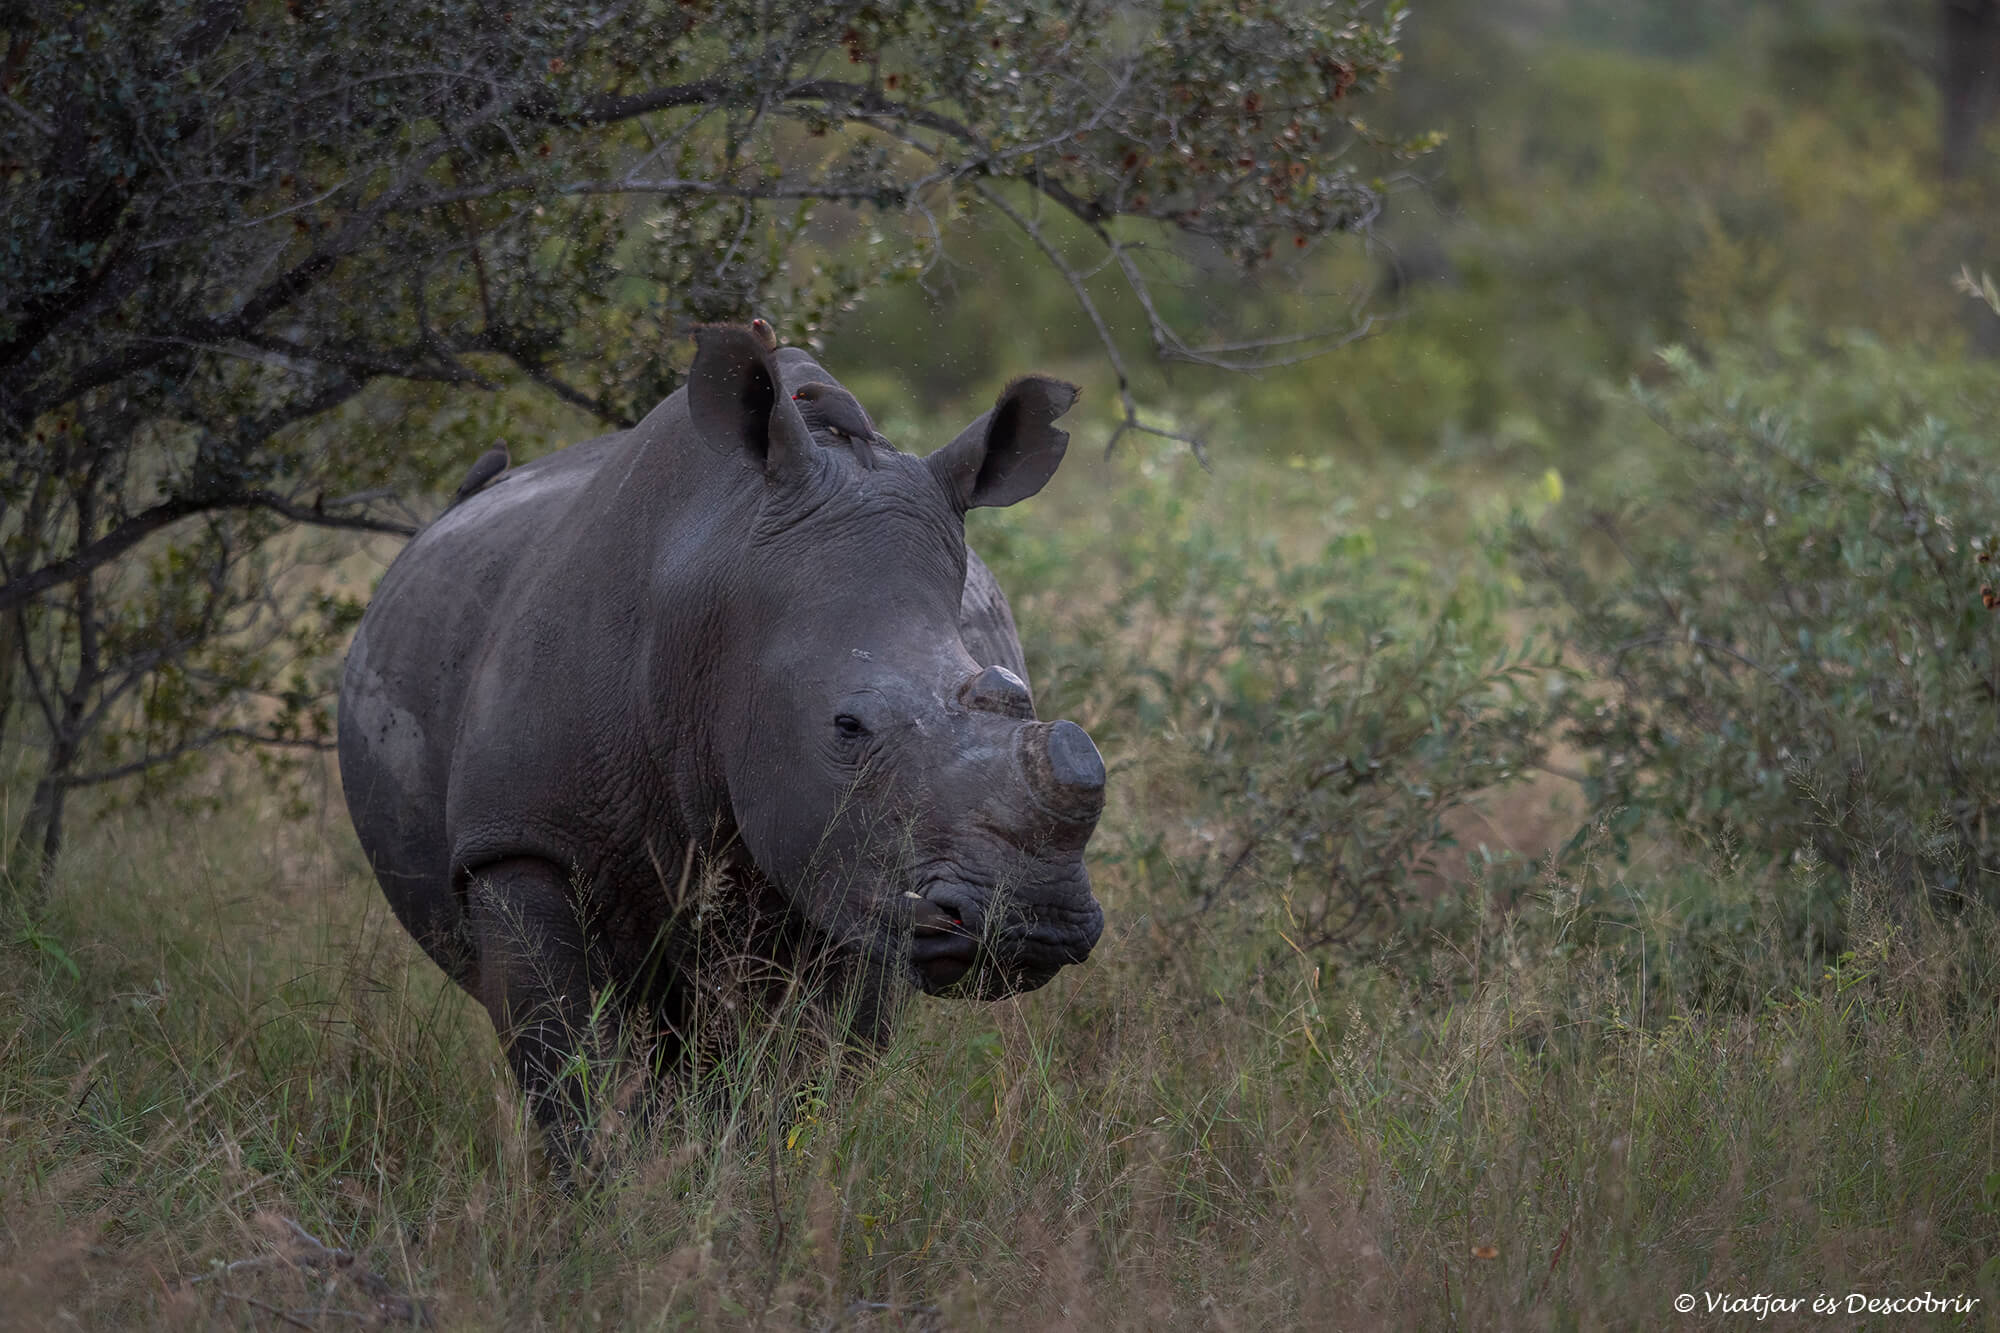 en conduir pel Parc Nacional Kruger i trobar un rinoceront blanc com el de la imatge no cal compartir-ne la ubicació